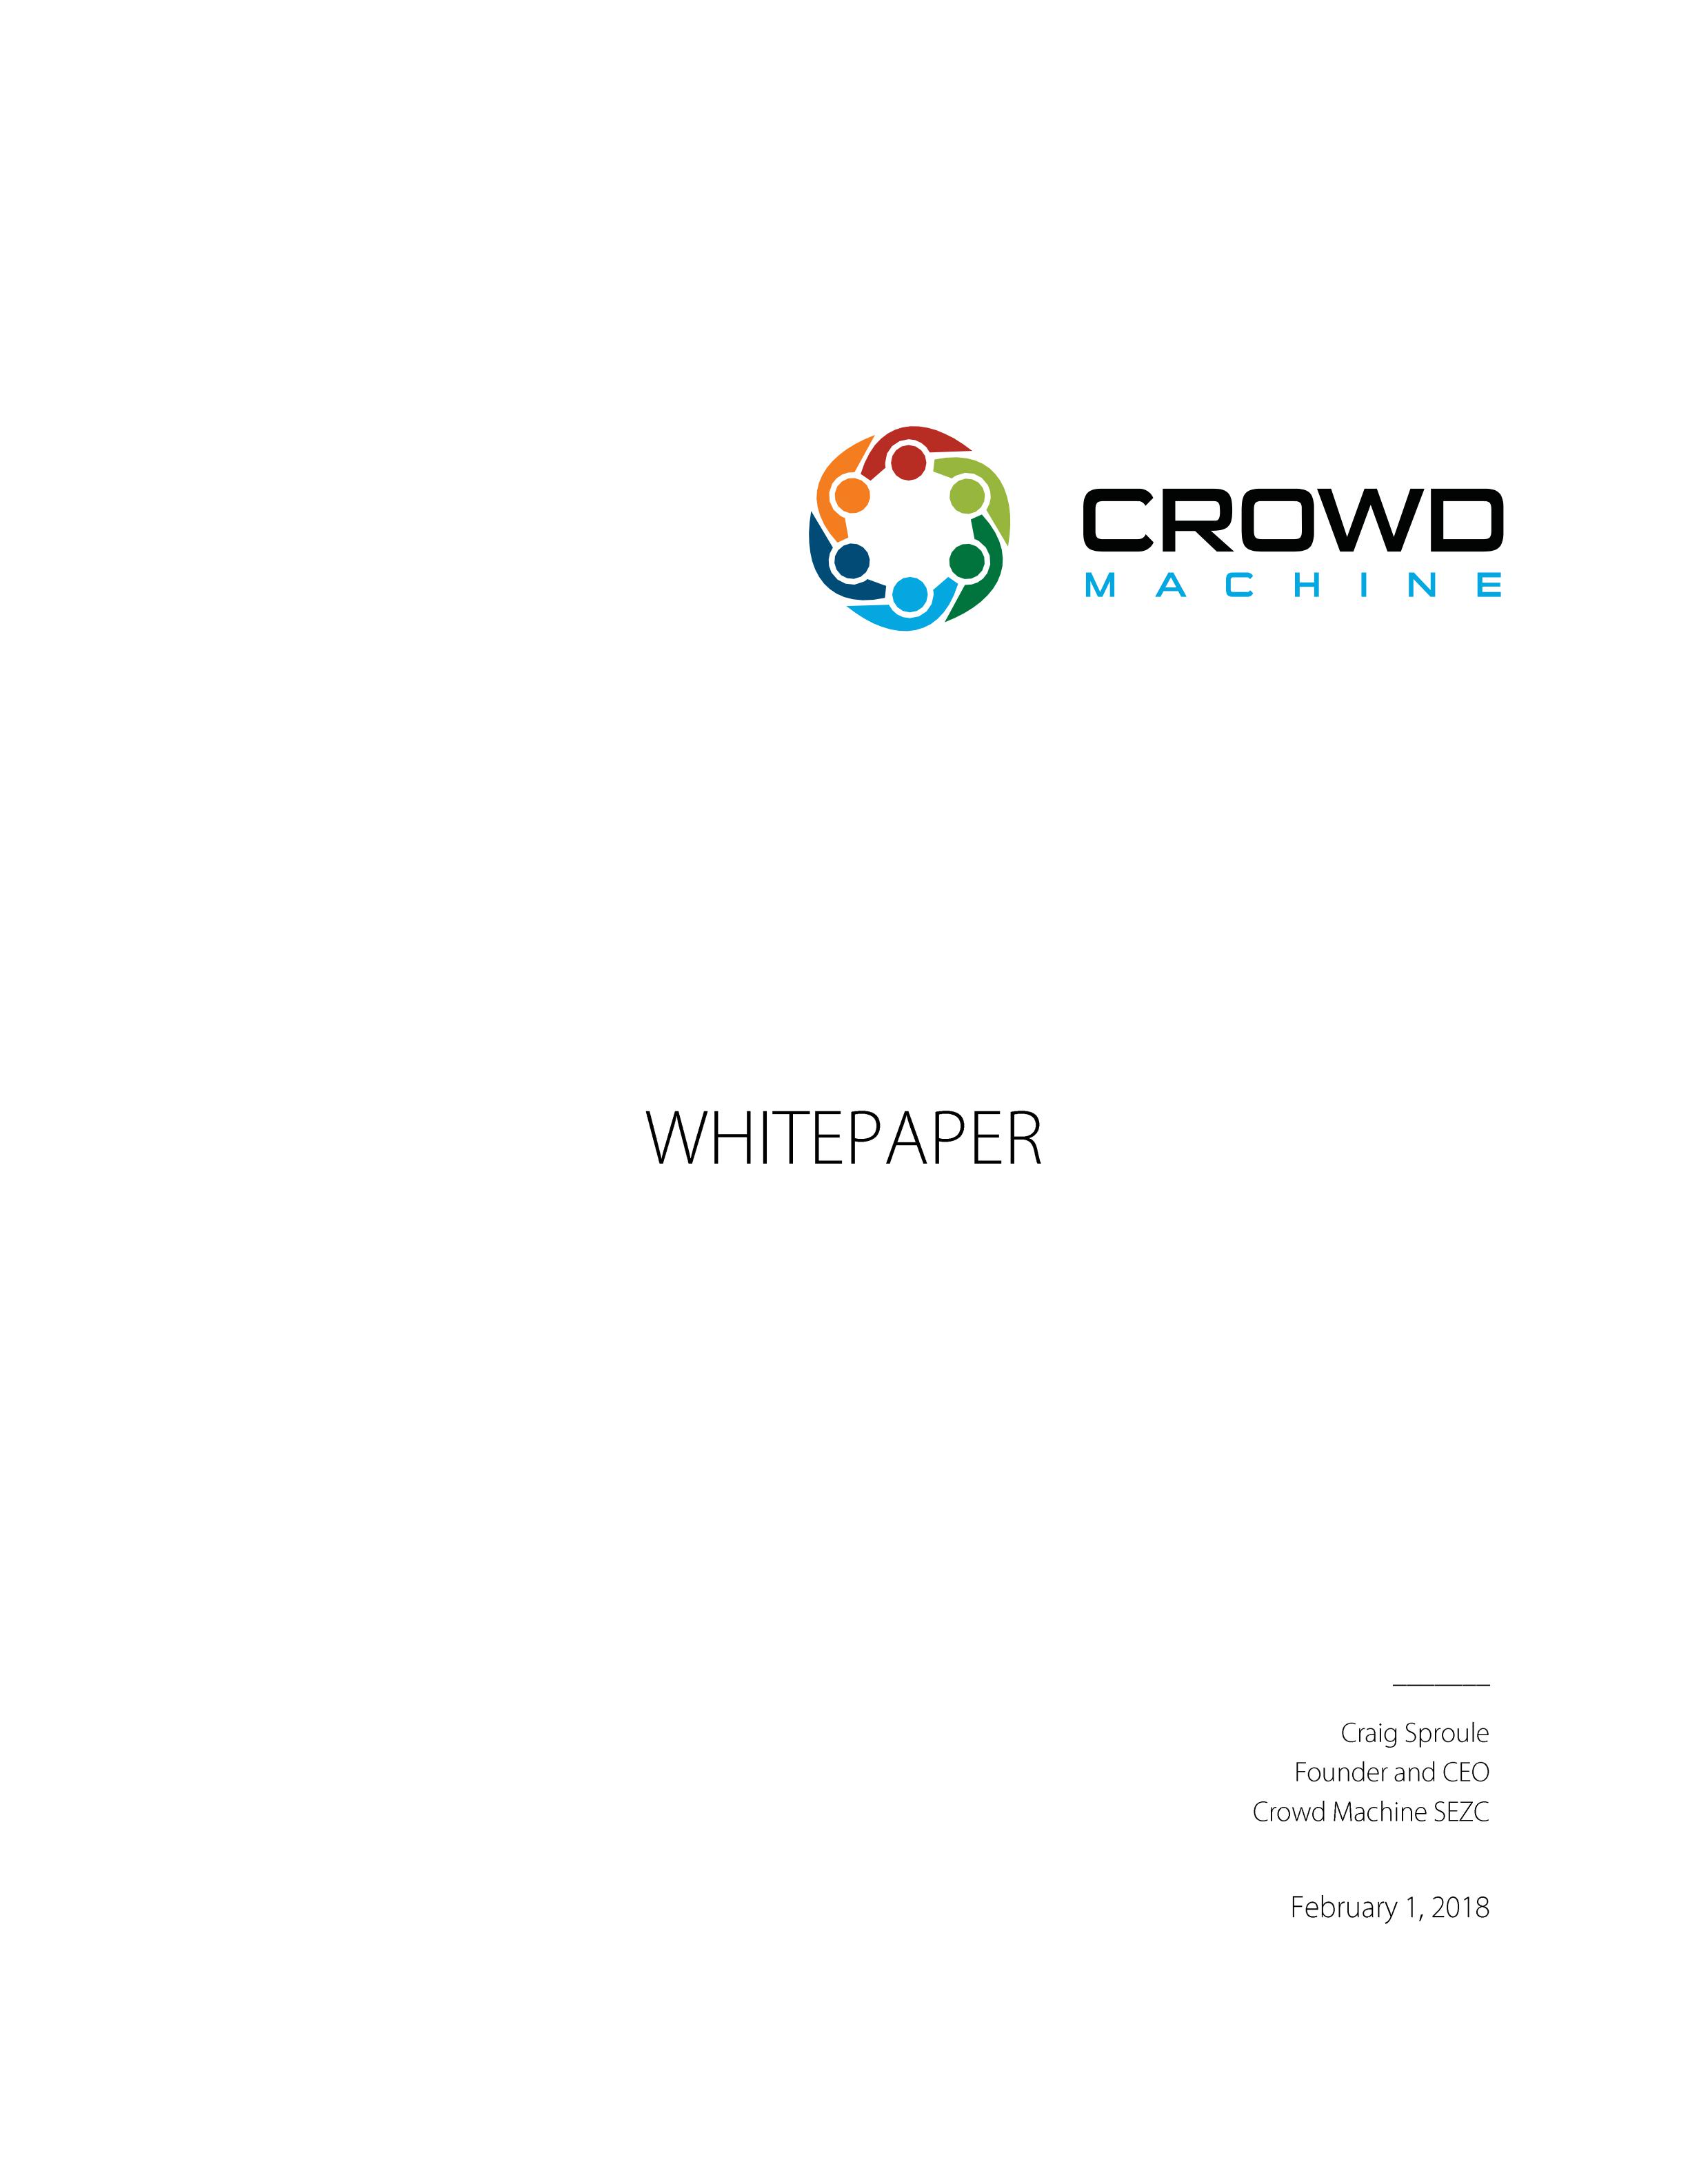 CMCT_Crowd-Machine-Whitepaper_00.jpg